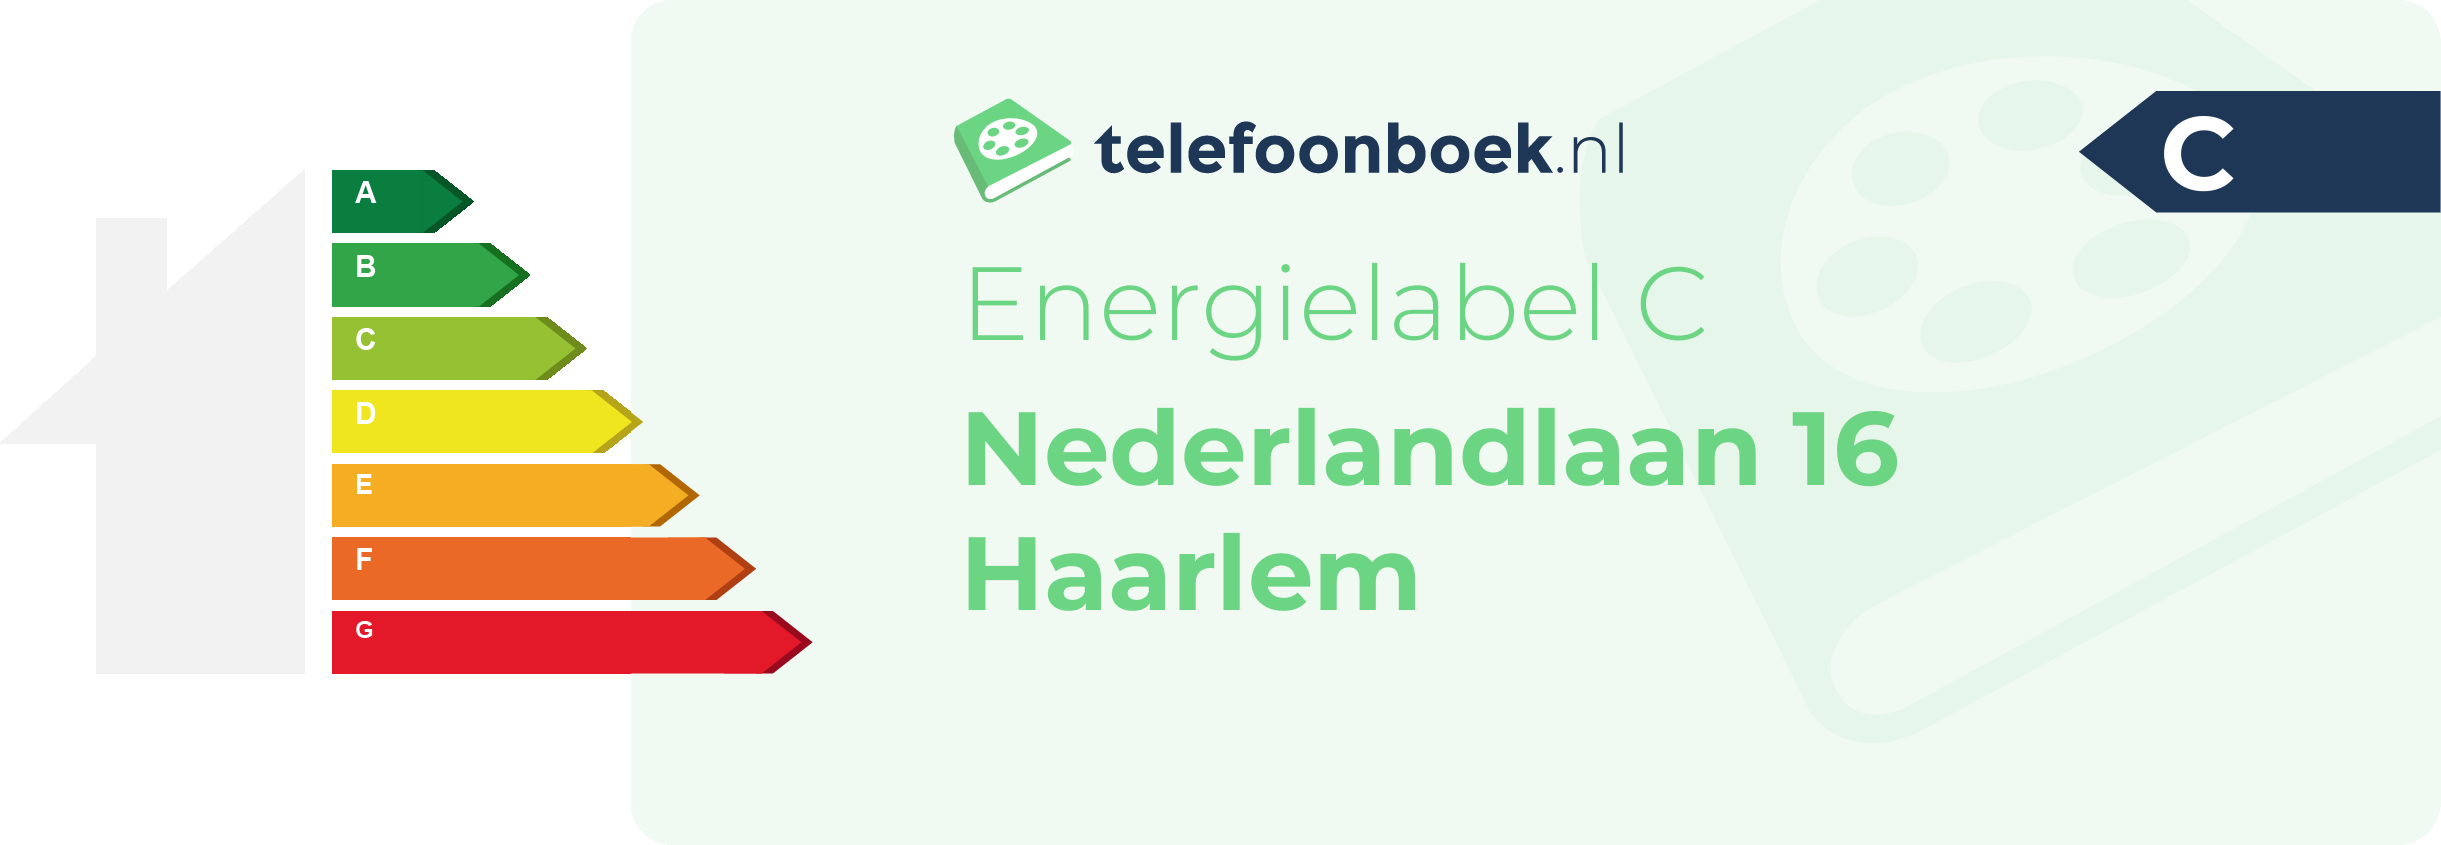 Energielabel Nederlandlaan 16 Haarlem